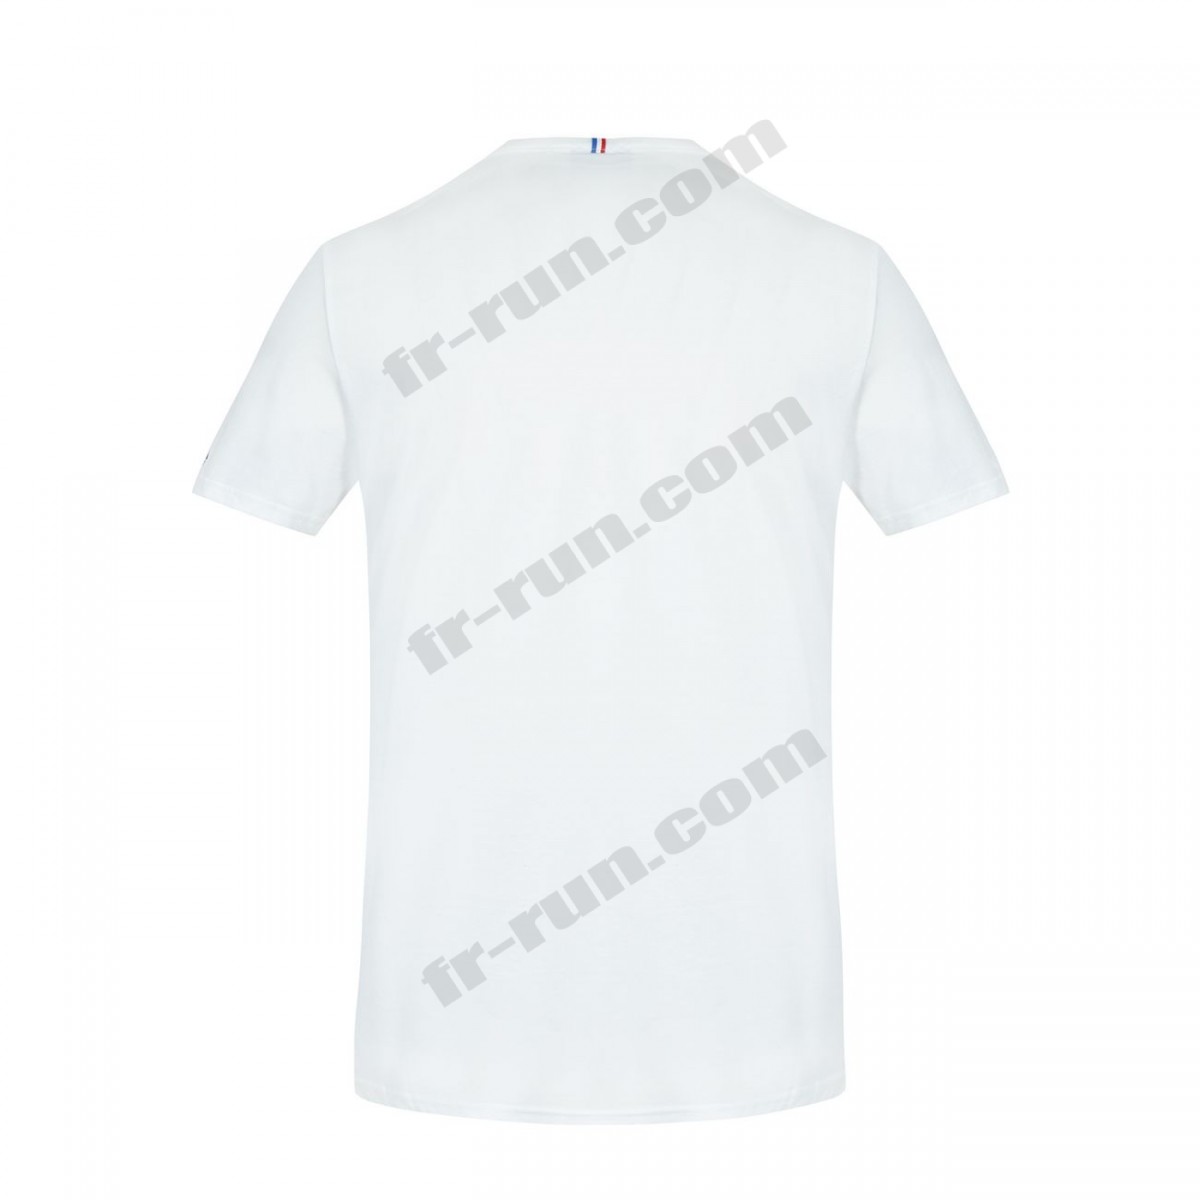 Le Coq Sportif/running adulte LE COQ SPORTIF T-shirt manches longues Équipe de France Olympique Unisexe √ Nouveau style √ Soldes - -3